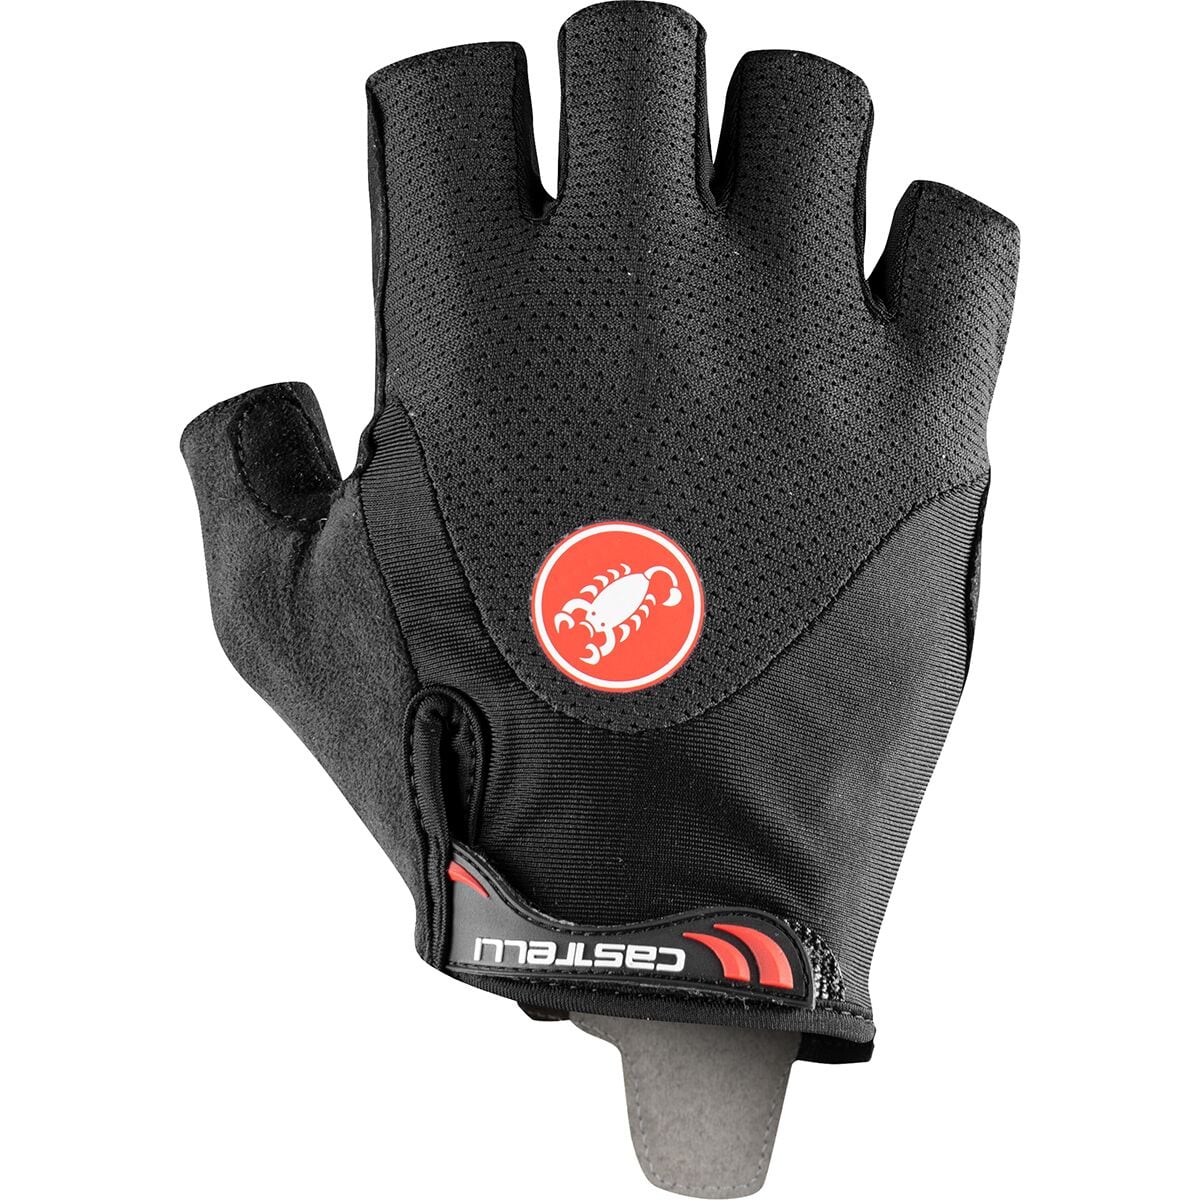 Photos - Winter Gloves & Mittens Castelli Arenberg Gel 2 Glove - Men's 